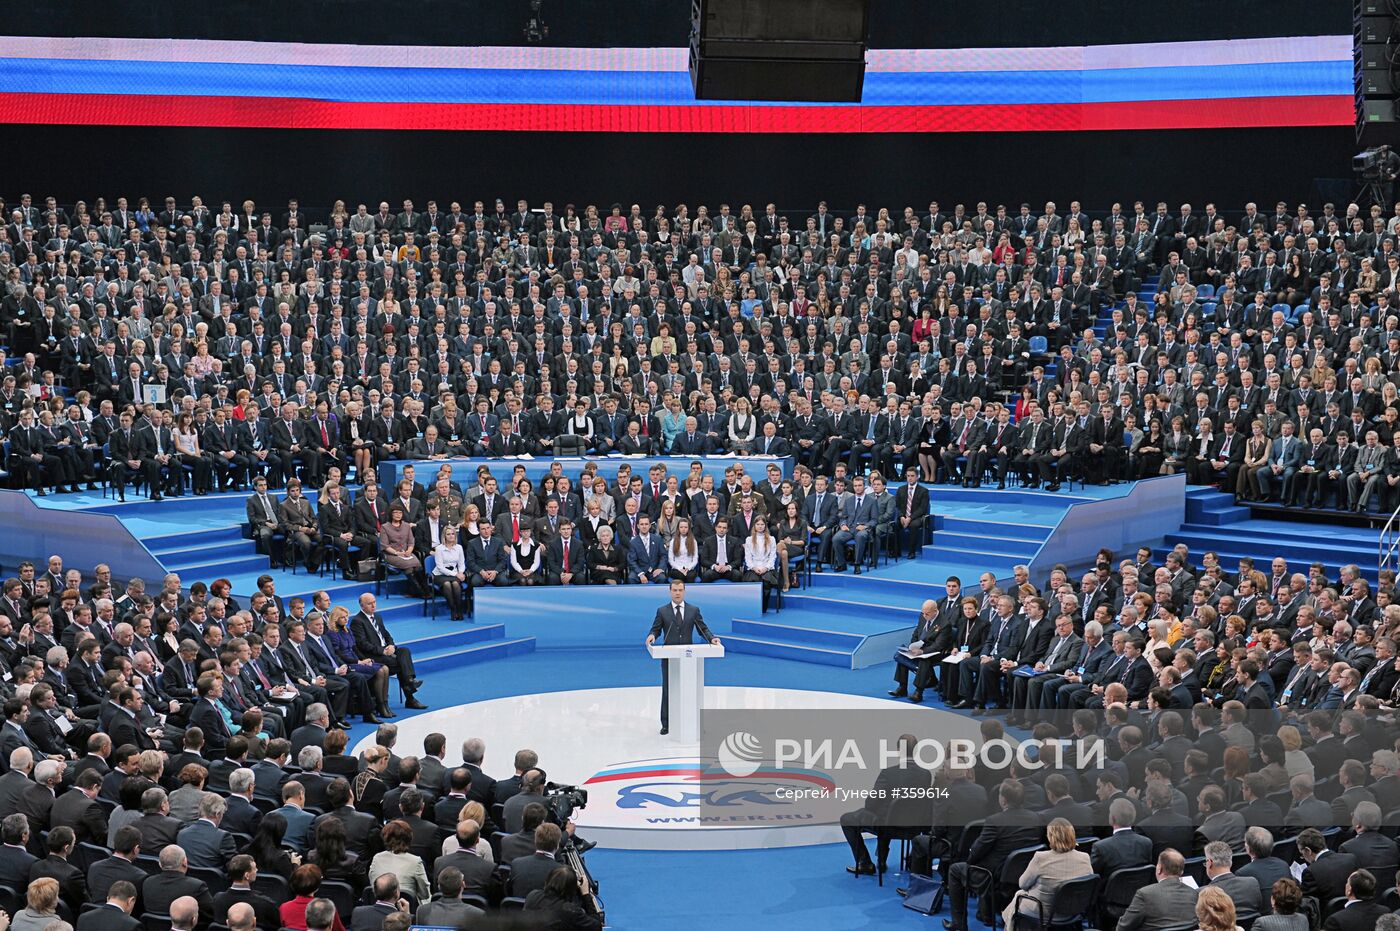 X cъезд партии "Единая Россия" открылся в Москве